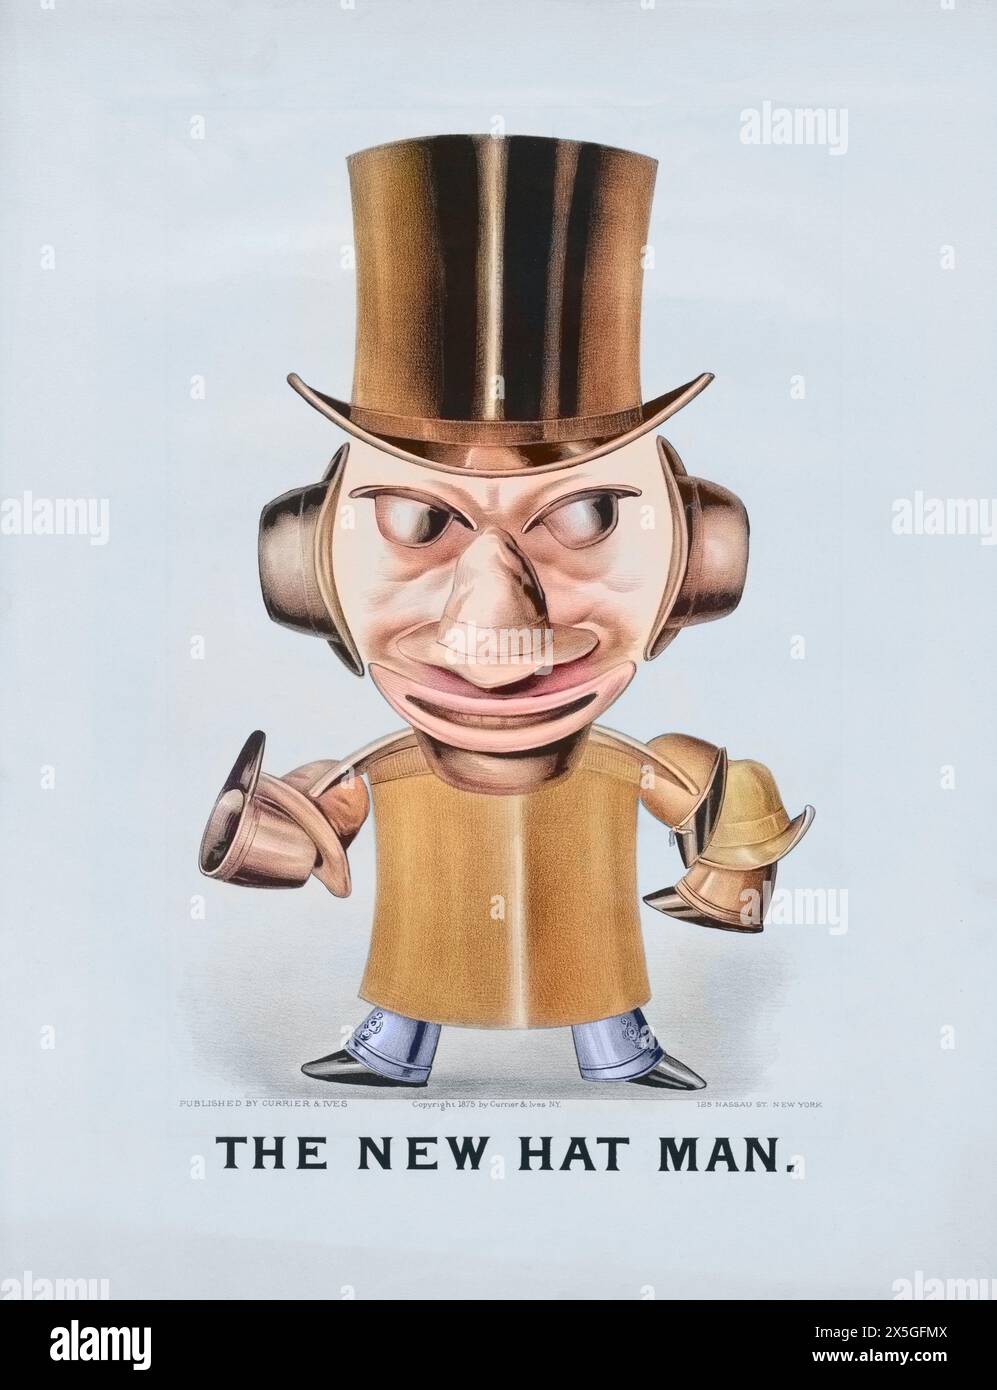 Poster di "The New Hat Man" pubblicato a New York da Currier & Ives in c1875; versione colorata dell'opera originale in bianco e nero. Foto Stock